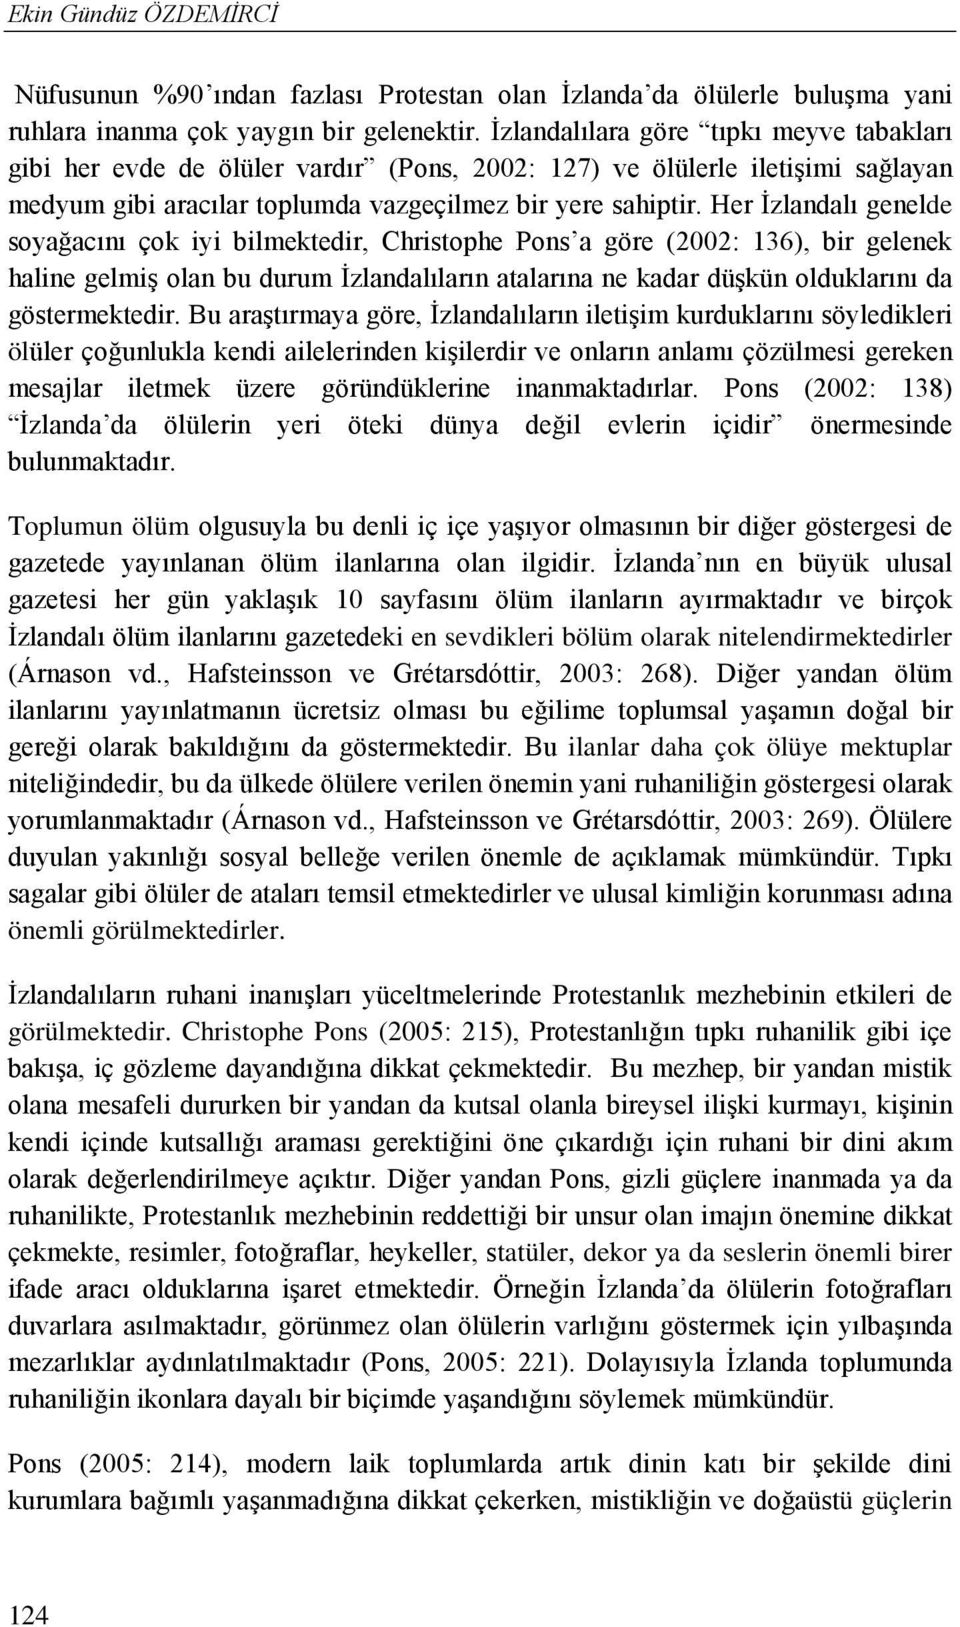 Her İzlandalı genelde soyağacını çok iyi bilmektedir, Christophe Pons a göre (2002: 136), bir gelenek haline gelmiş olan bu durum İzlandalıların atalarına ne kadar düşkün olduklarını da